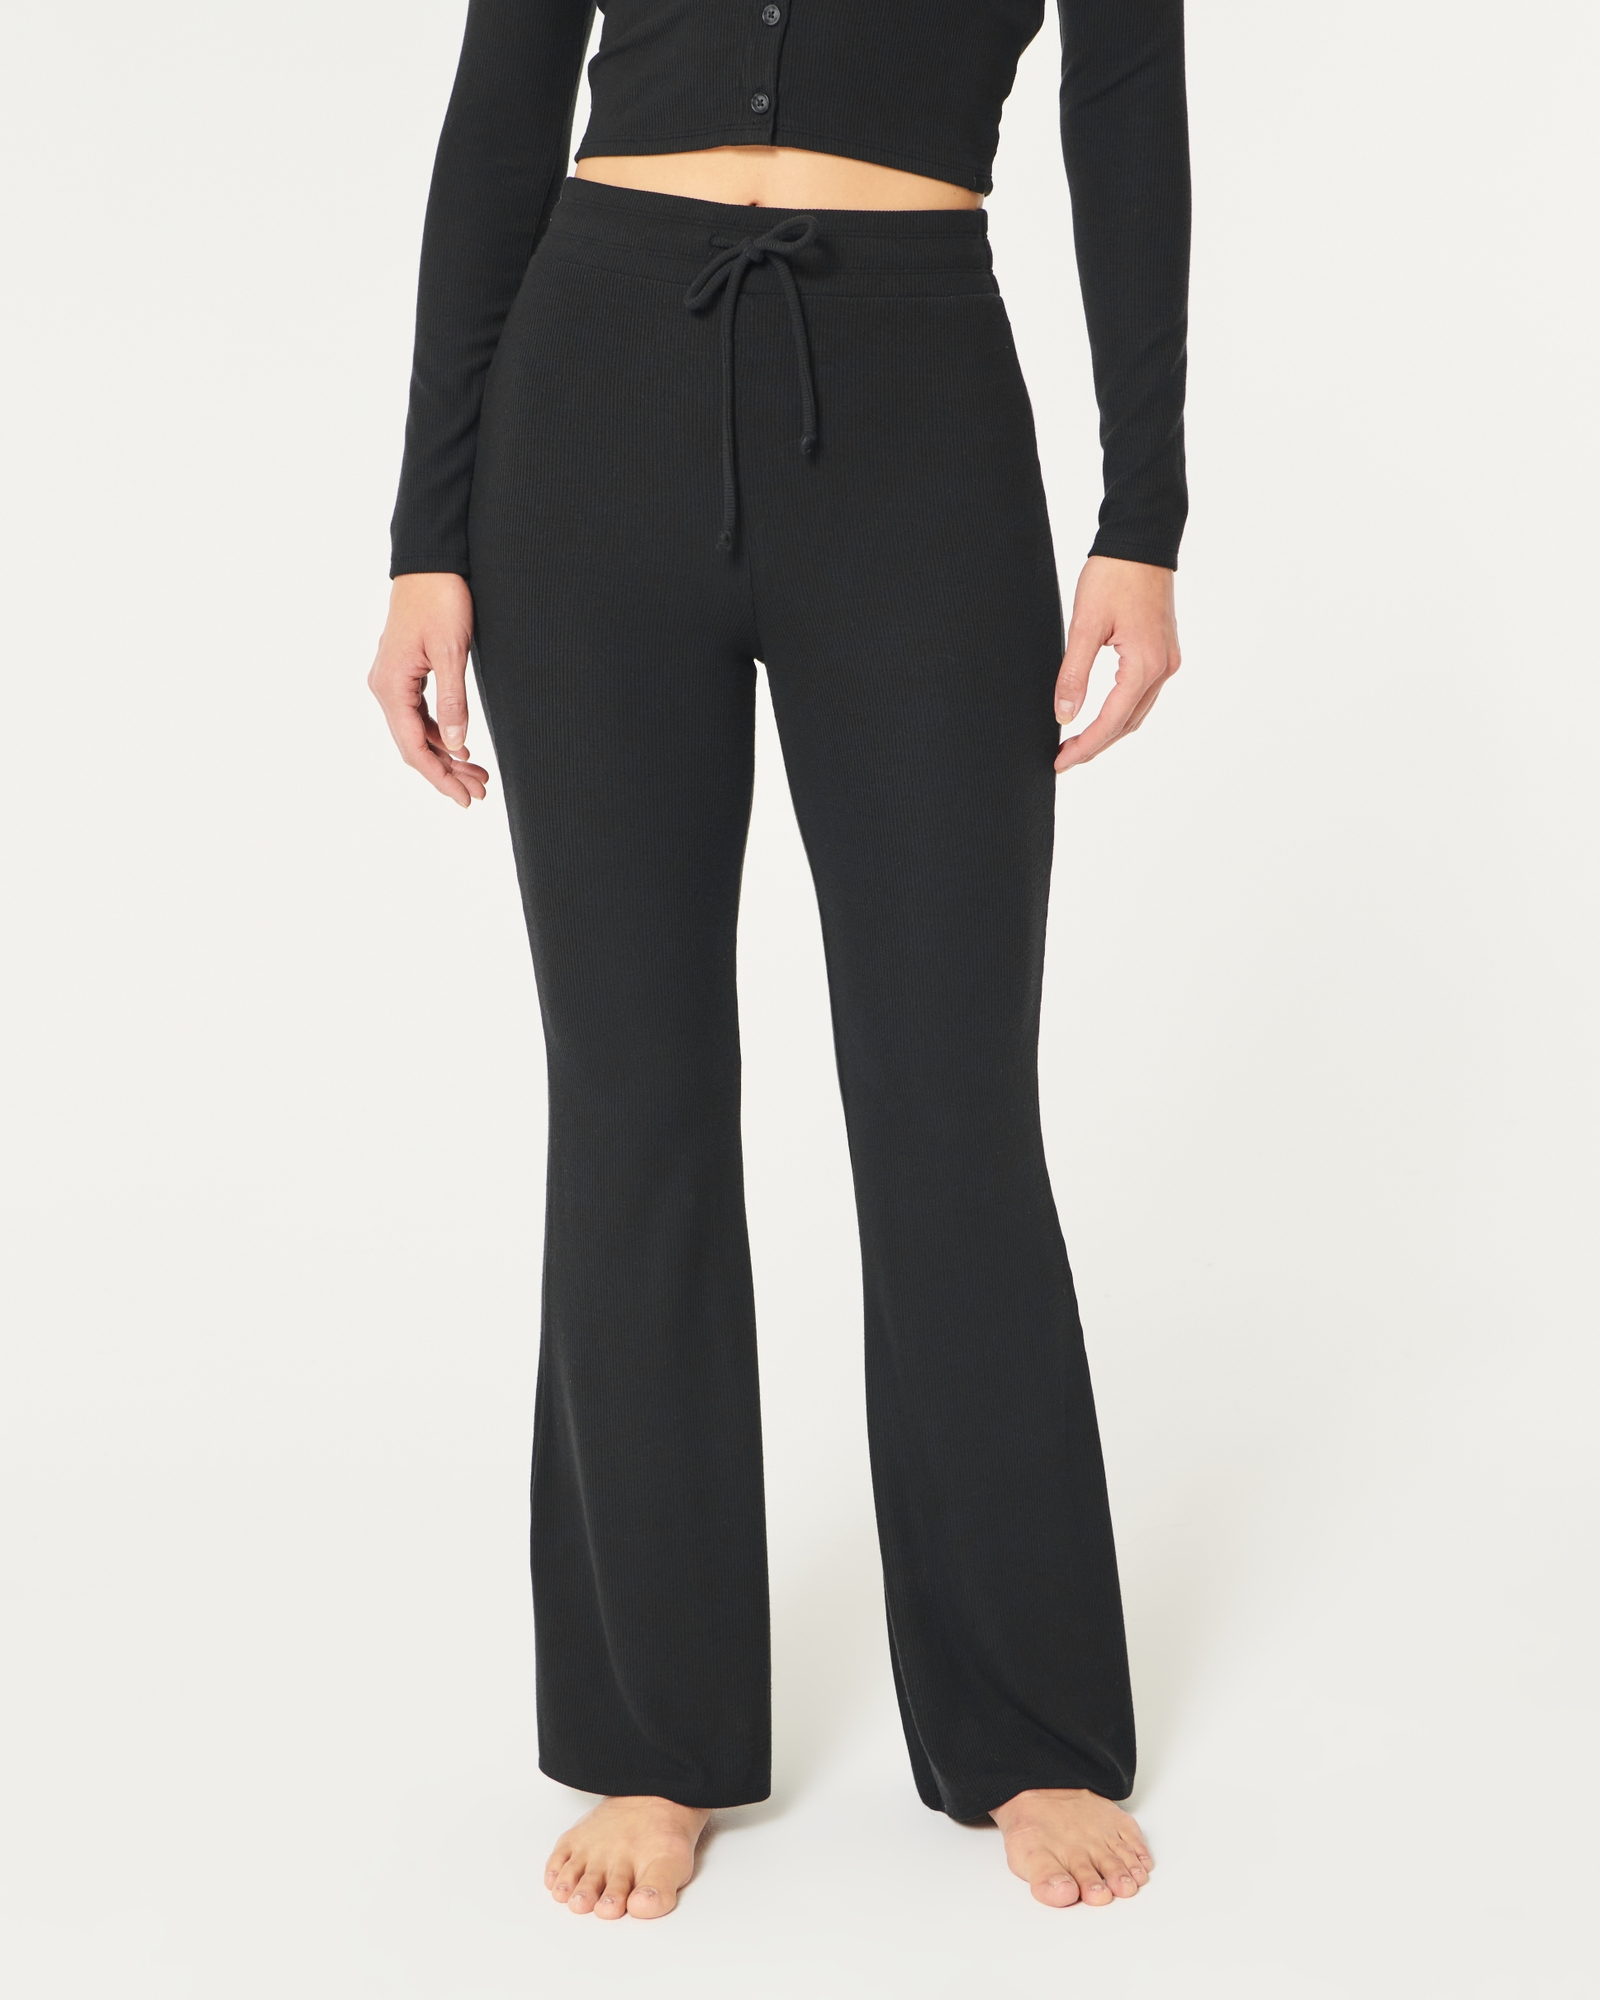 Sleepwear Hicks Flare Rib Gilly | Women\'s Loungewear Pants & Women\'s Jersey